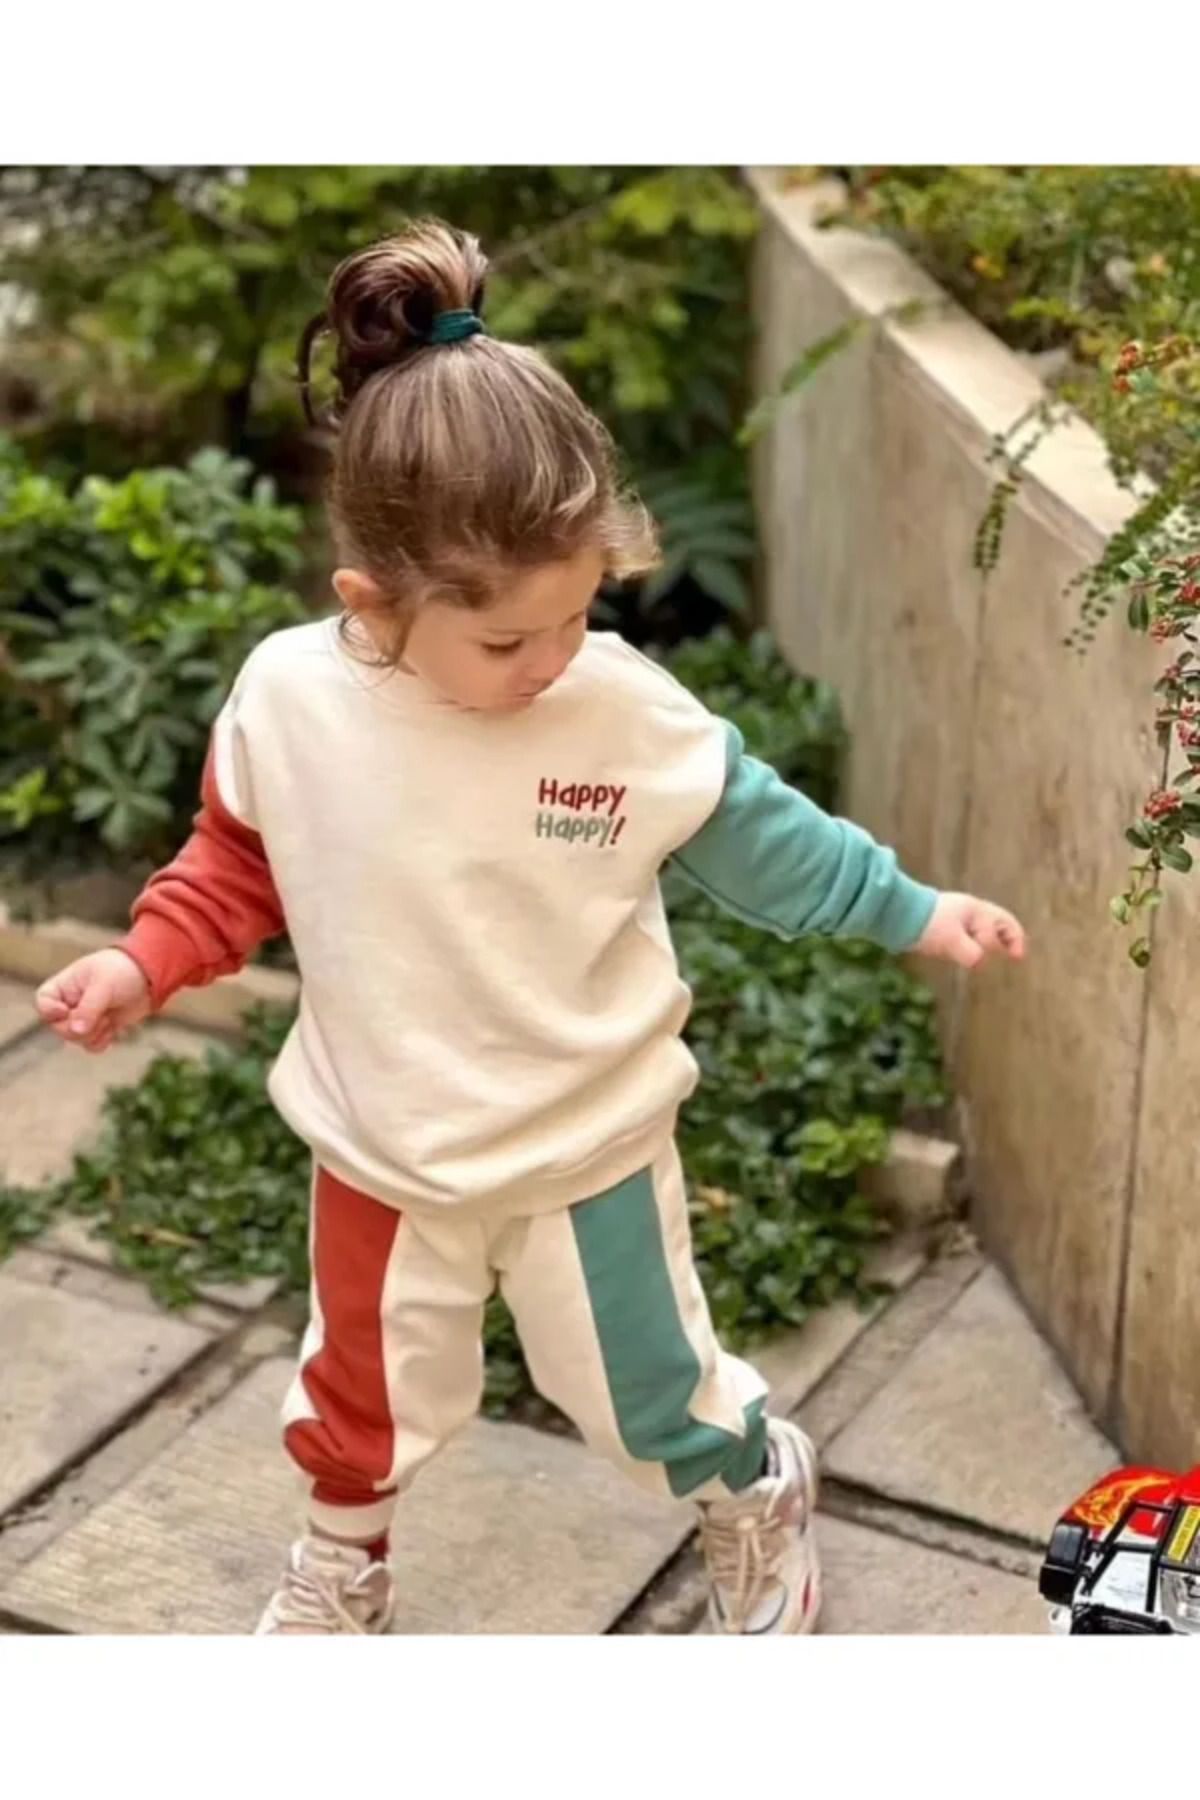 Hamham kids Happy Çocuk Giyim Takım Yeni Ürün Görselin Aynısıdır